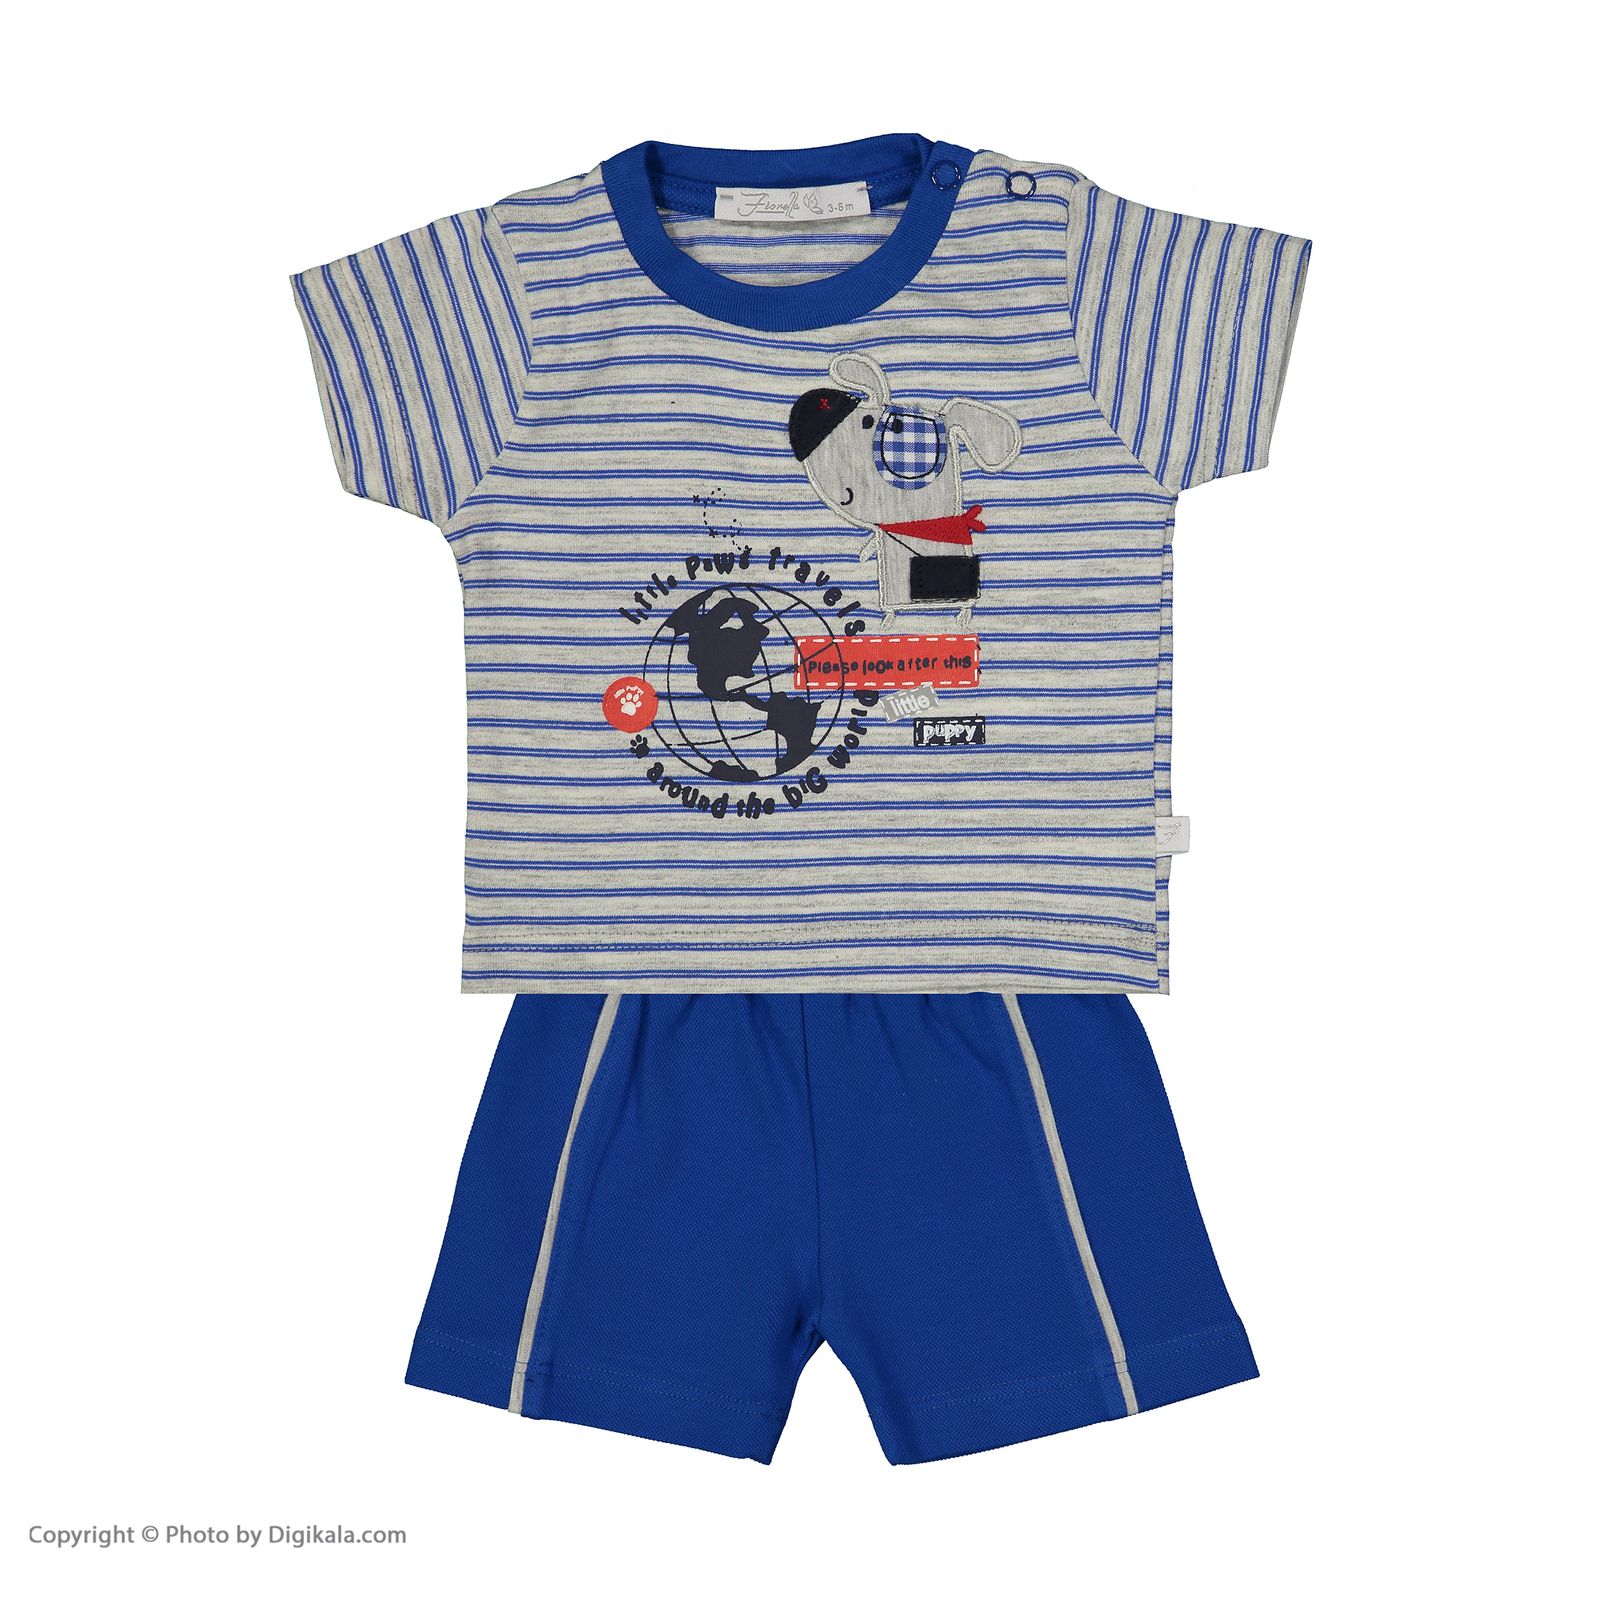 ست تی شرت و شلوارک راحتی نوزادی پسرانه فیورلا مدل 2091115-58 -  - 2